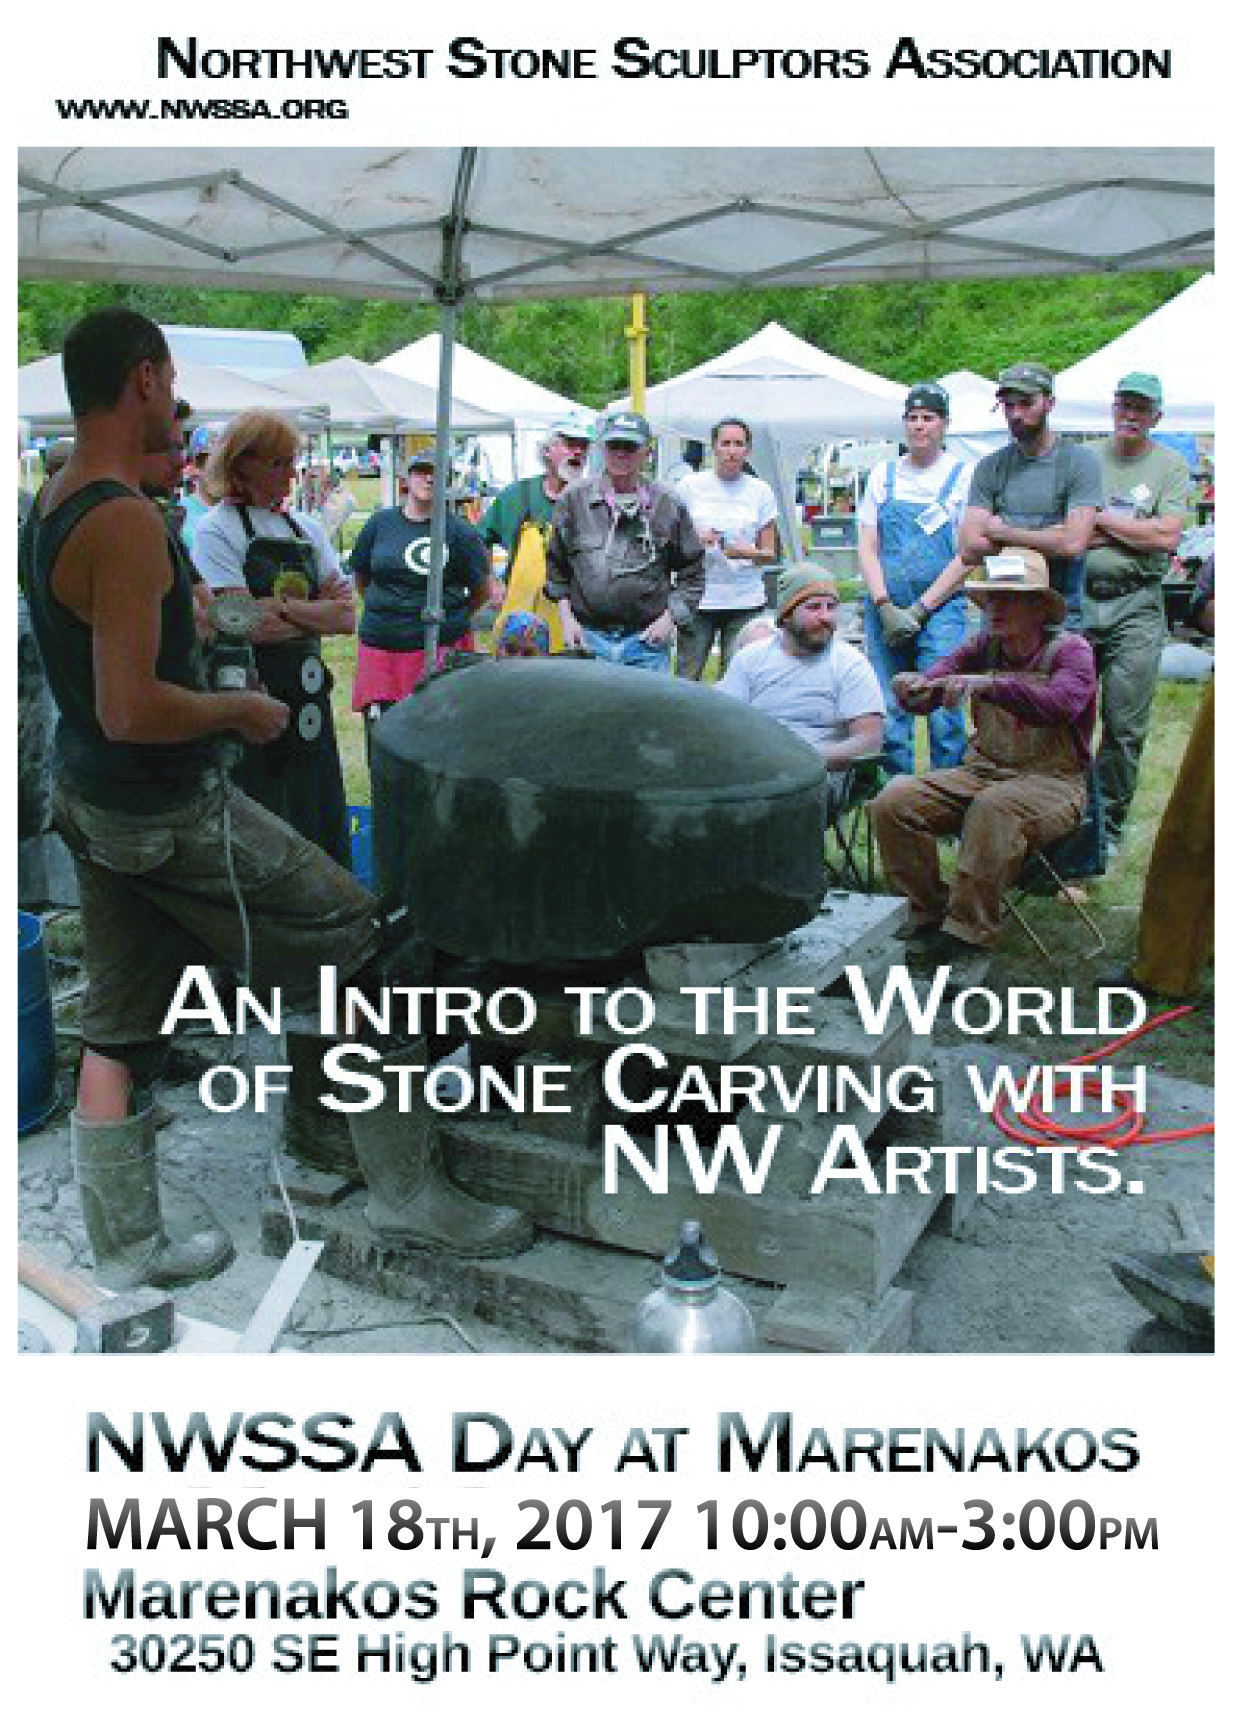 NWSSA Day at Marenakos Rock Center